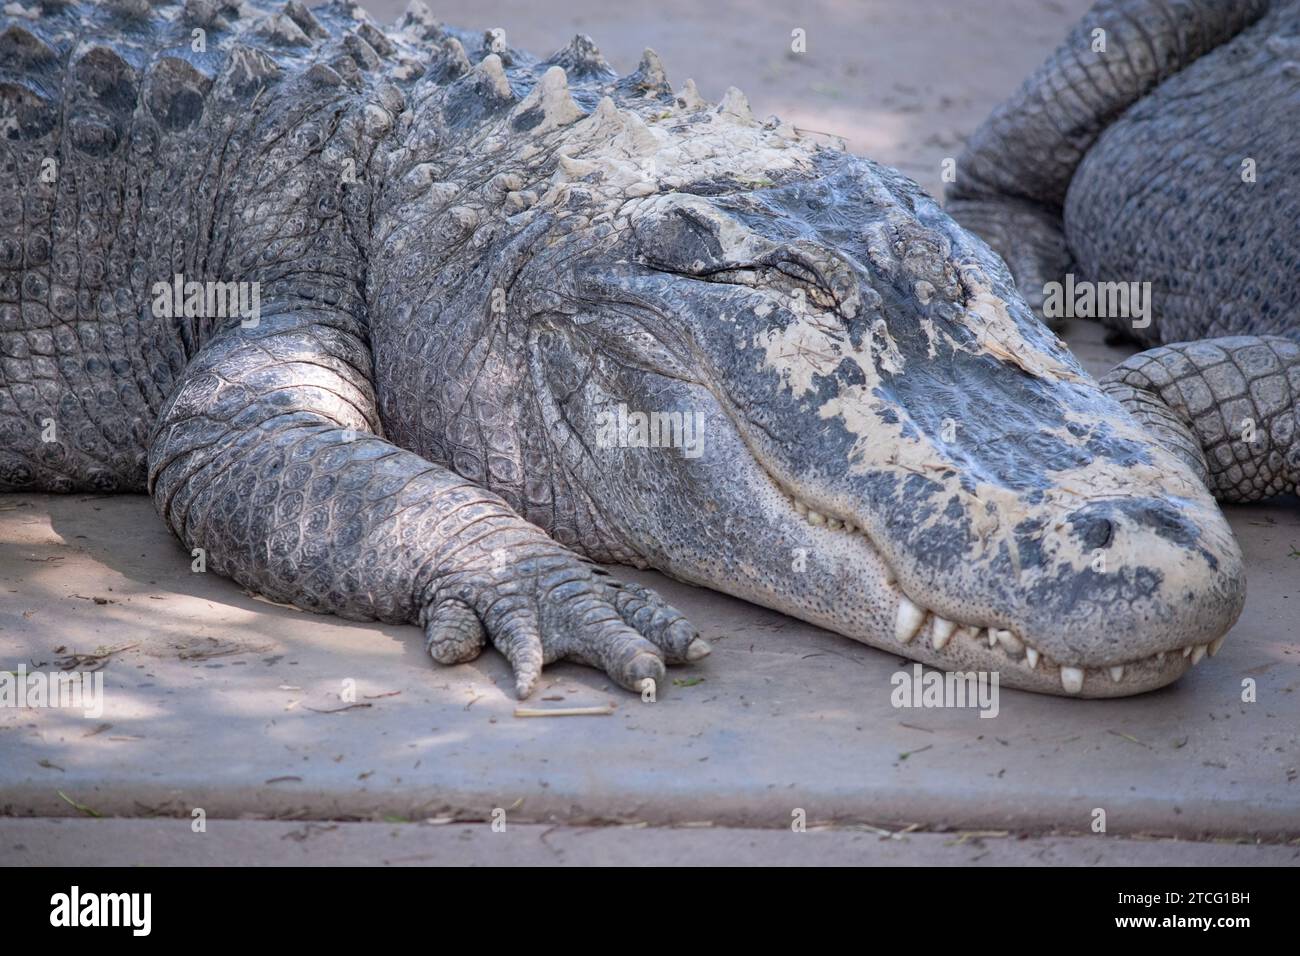 Les alligators ont un long museau arrondi qui a des narines orientées vers le haut à l'extrémité Banque D'Images